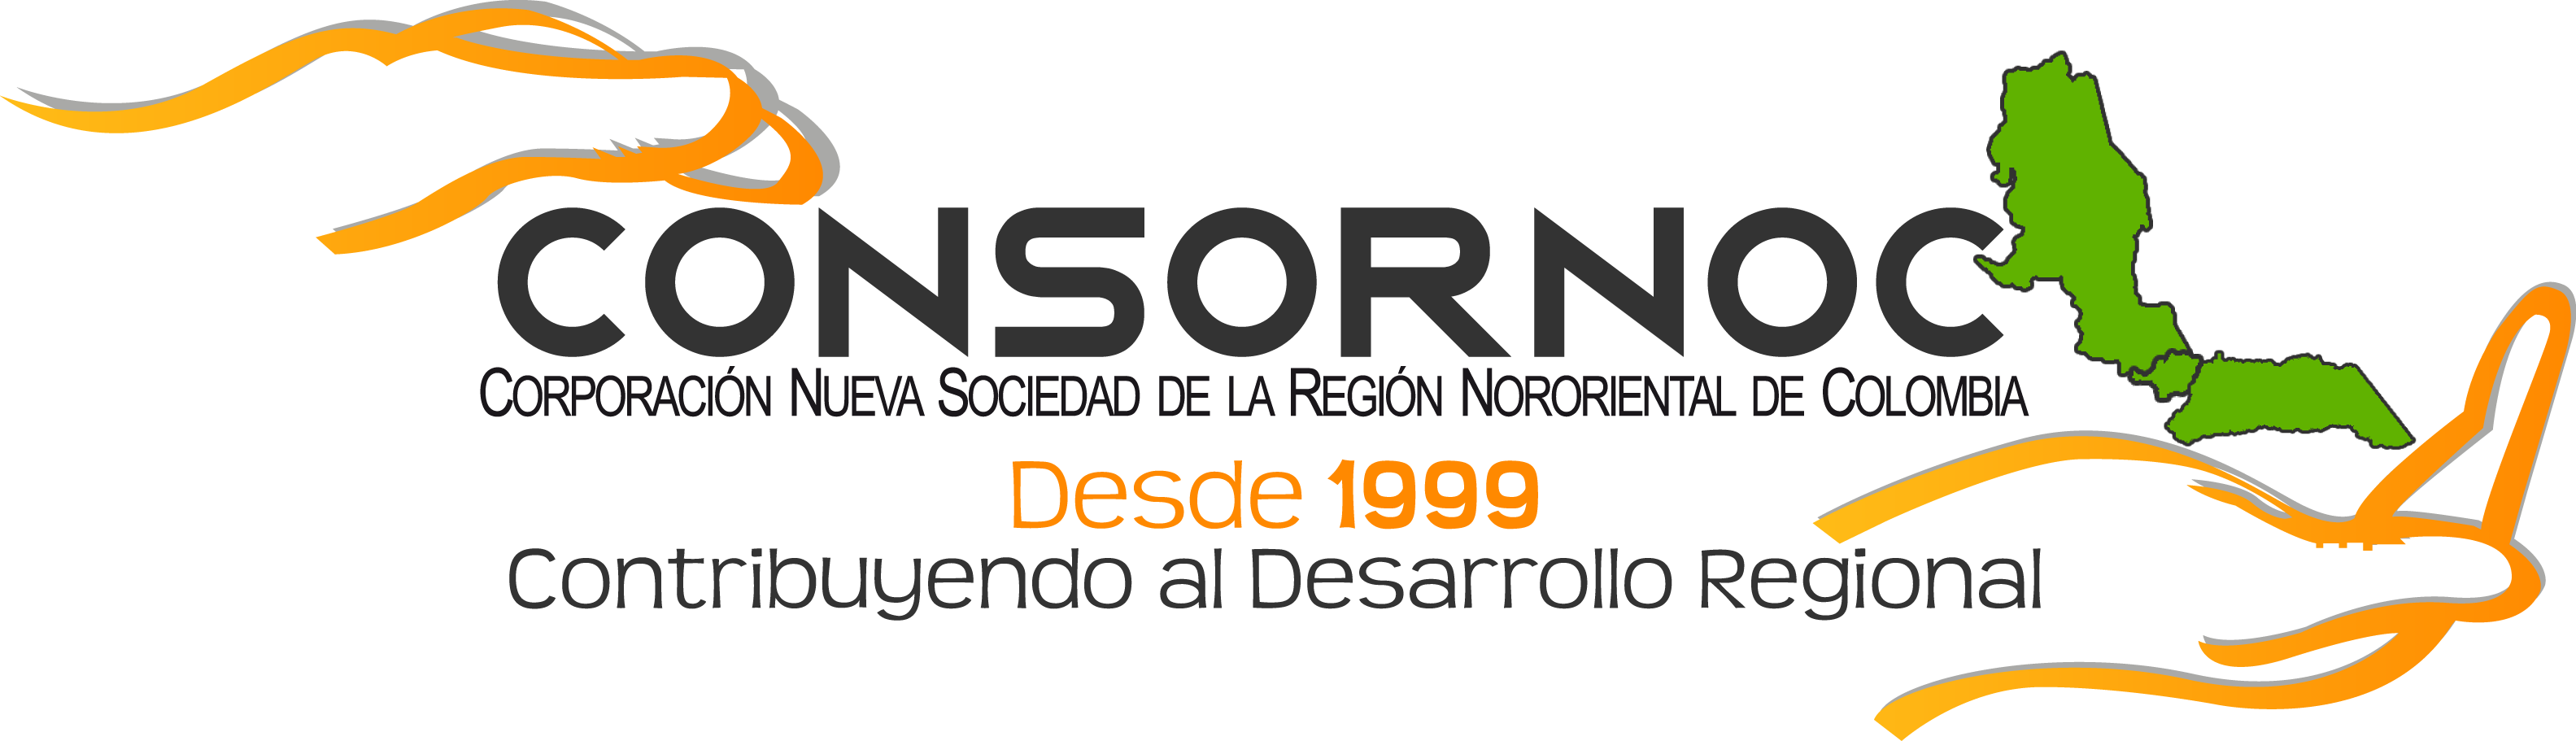 Corporación Nueva Sociedad de la Región Nororiental de Colombia